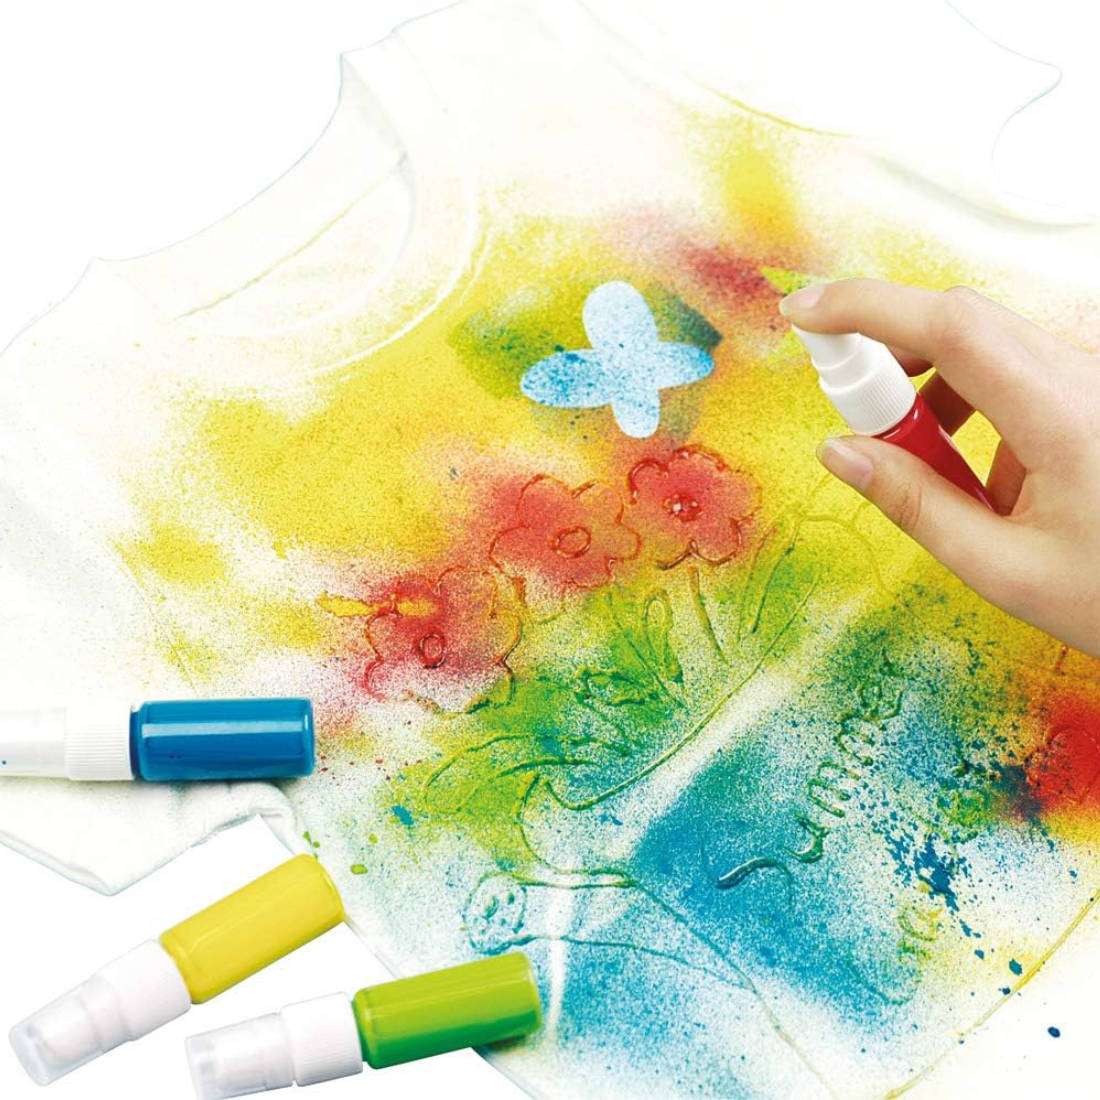 Fashion Textile Farben Styler Spray Schablonen